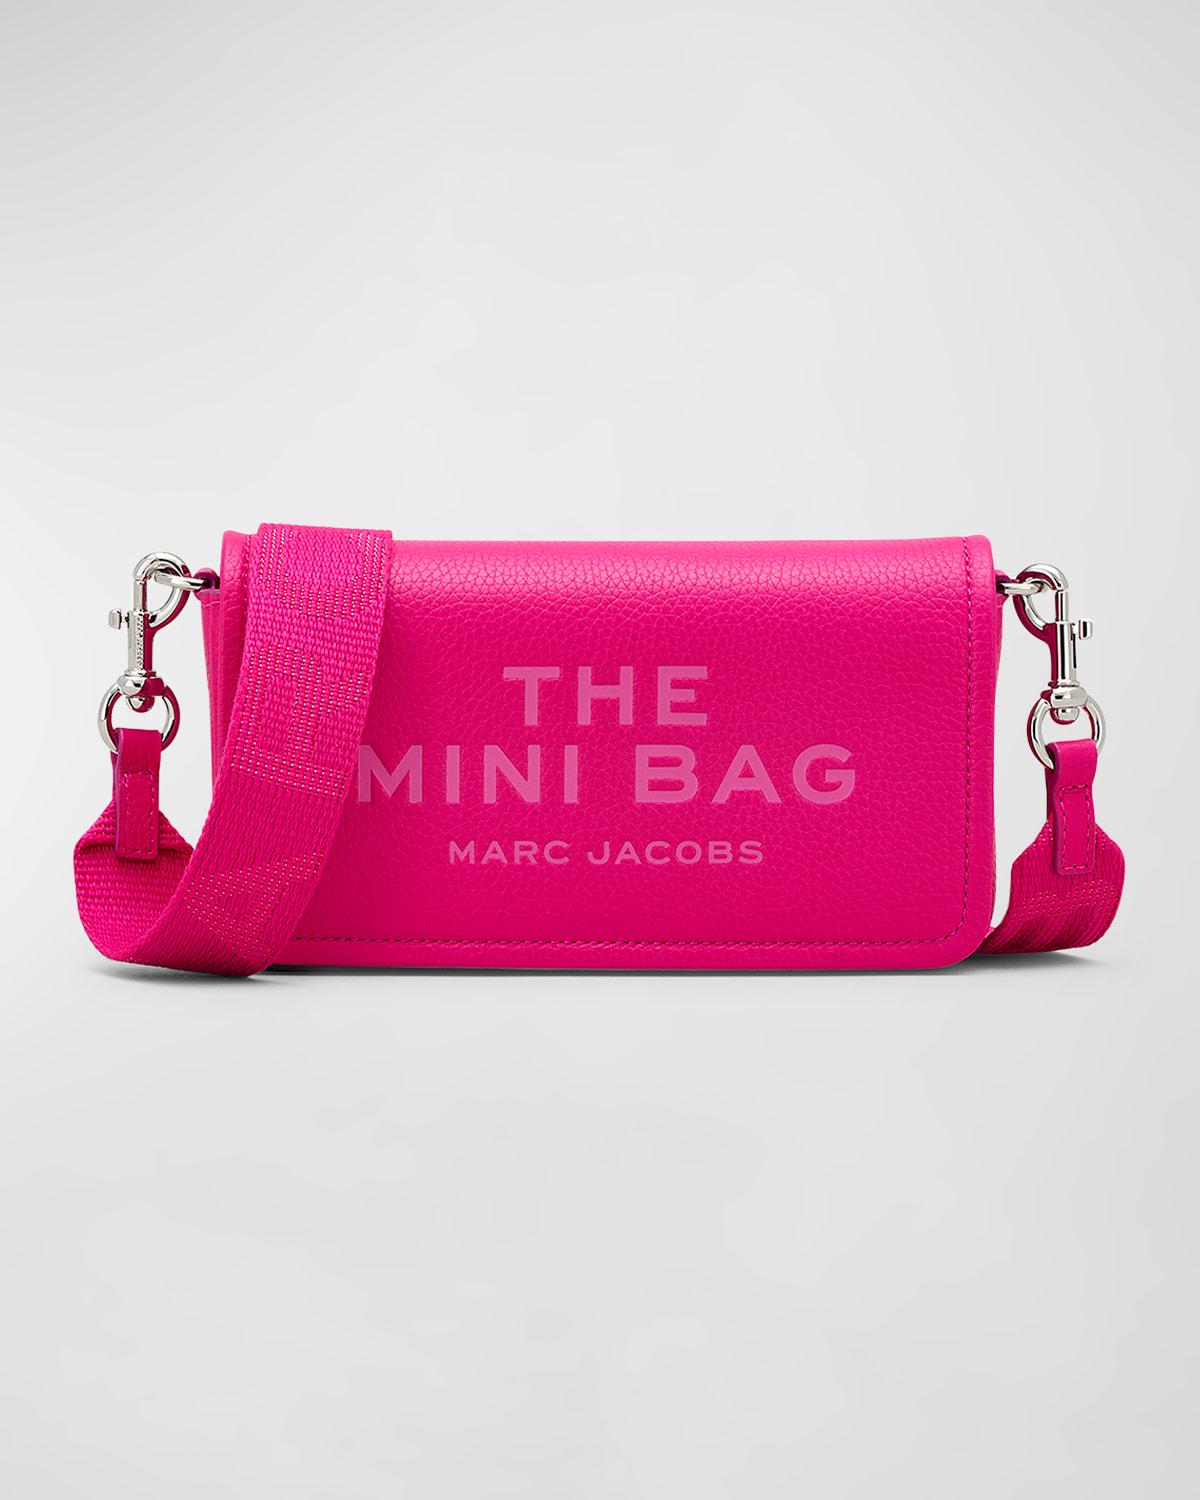 The Leather Mini Bag